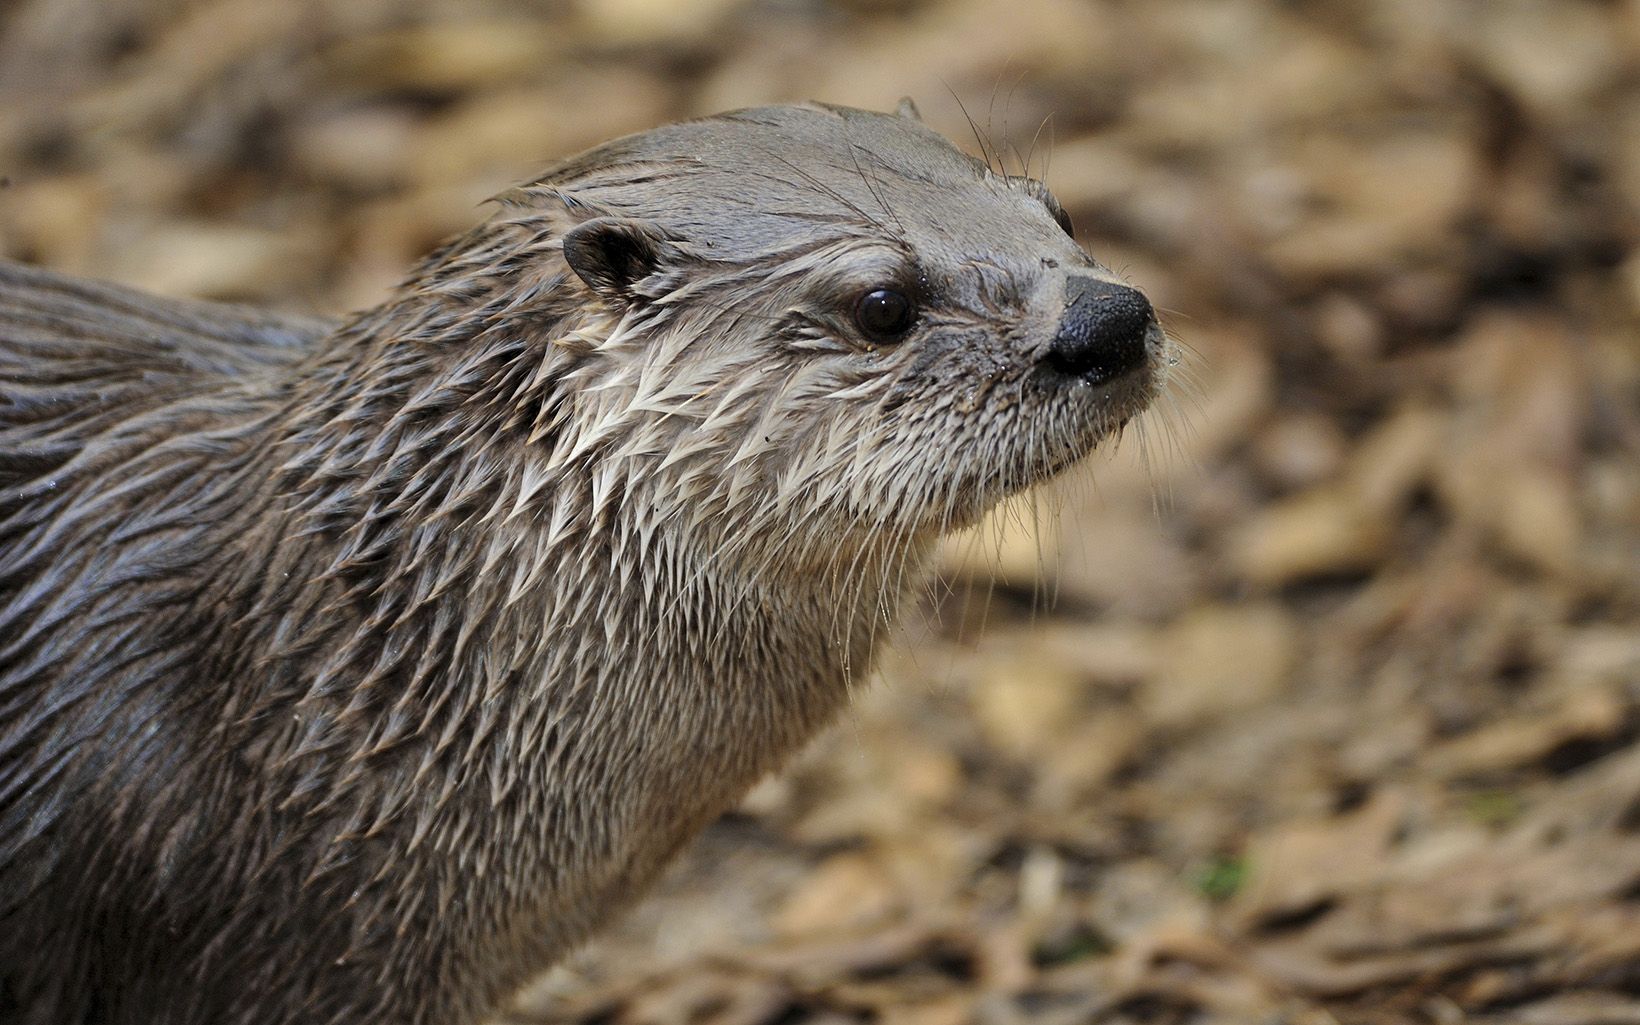 A close-up of an otter.